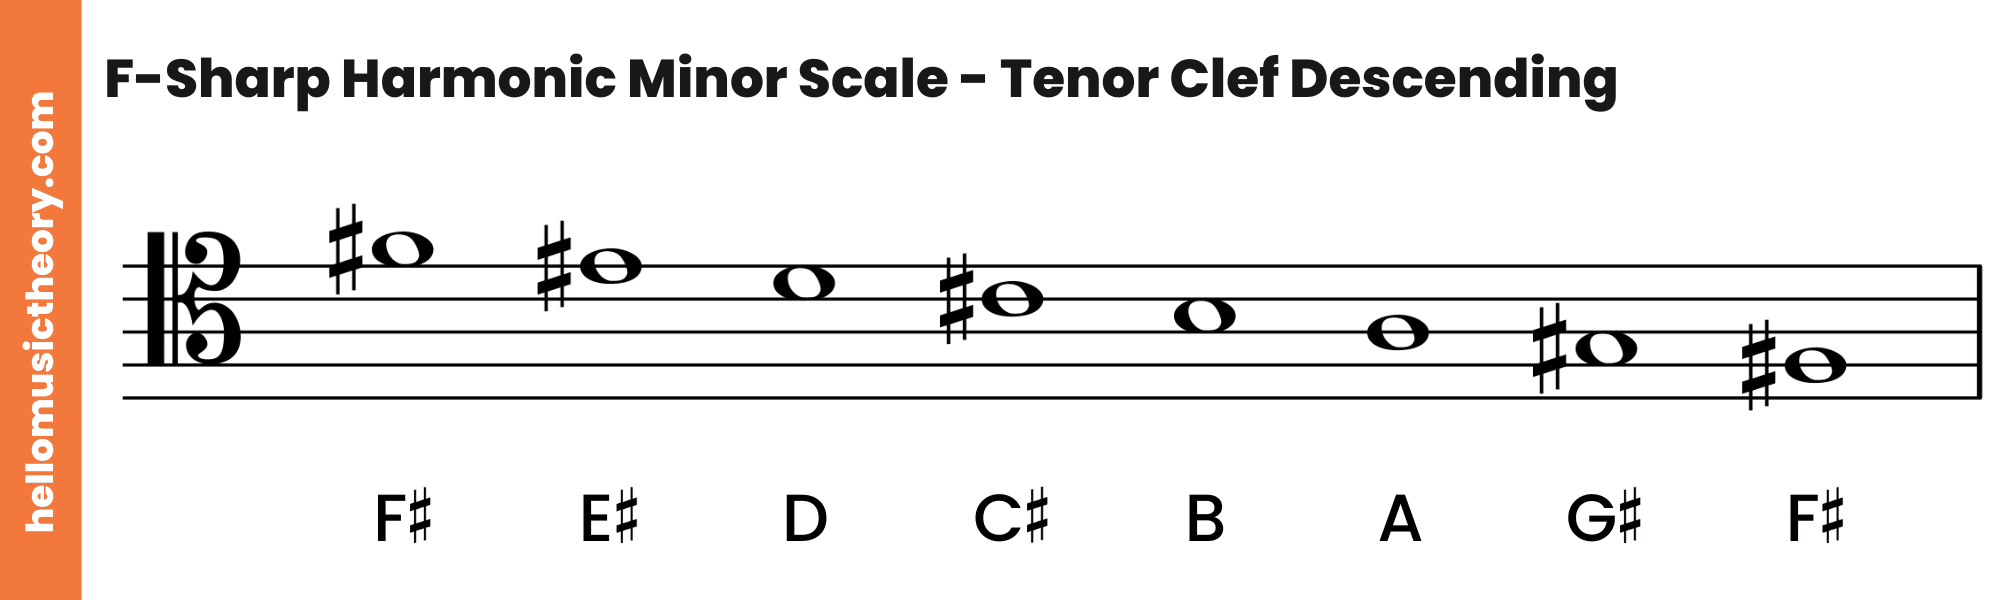 F-Sharp Harmonic Minor Scale Tenor Clef Descending